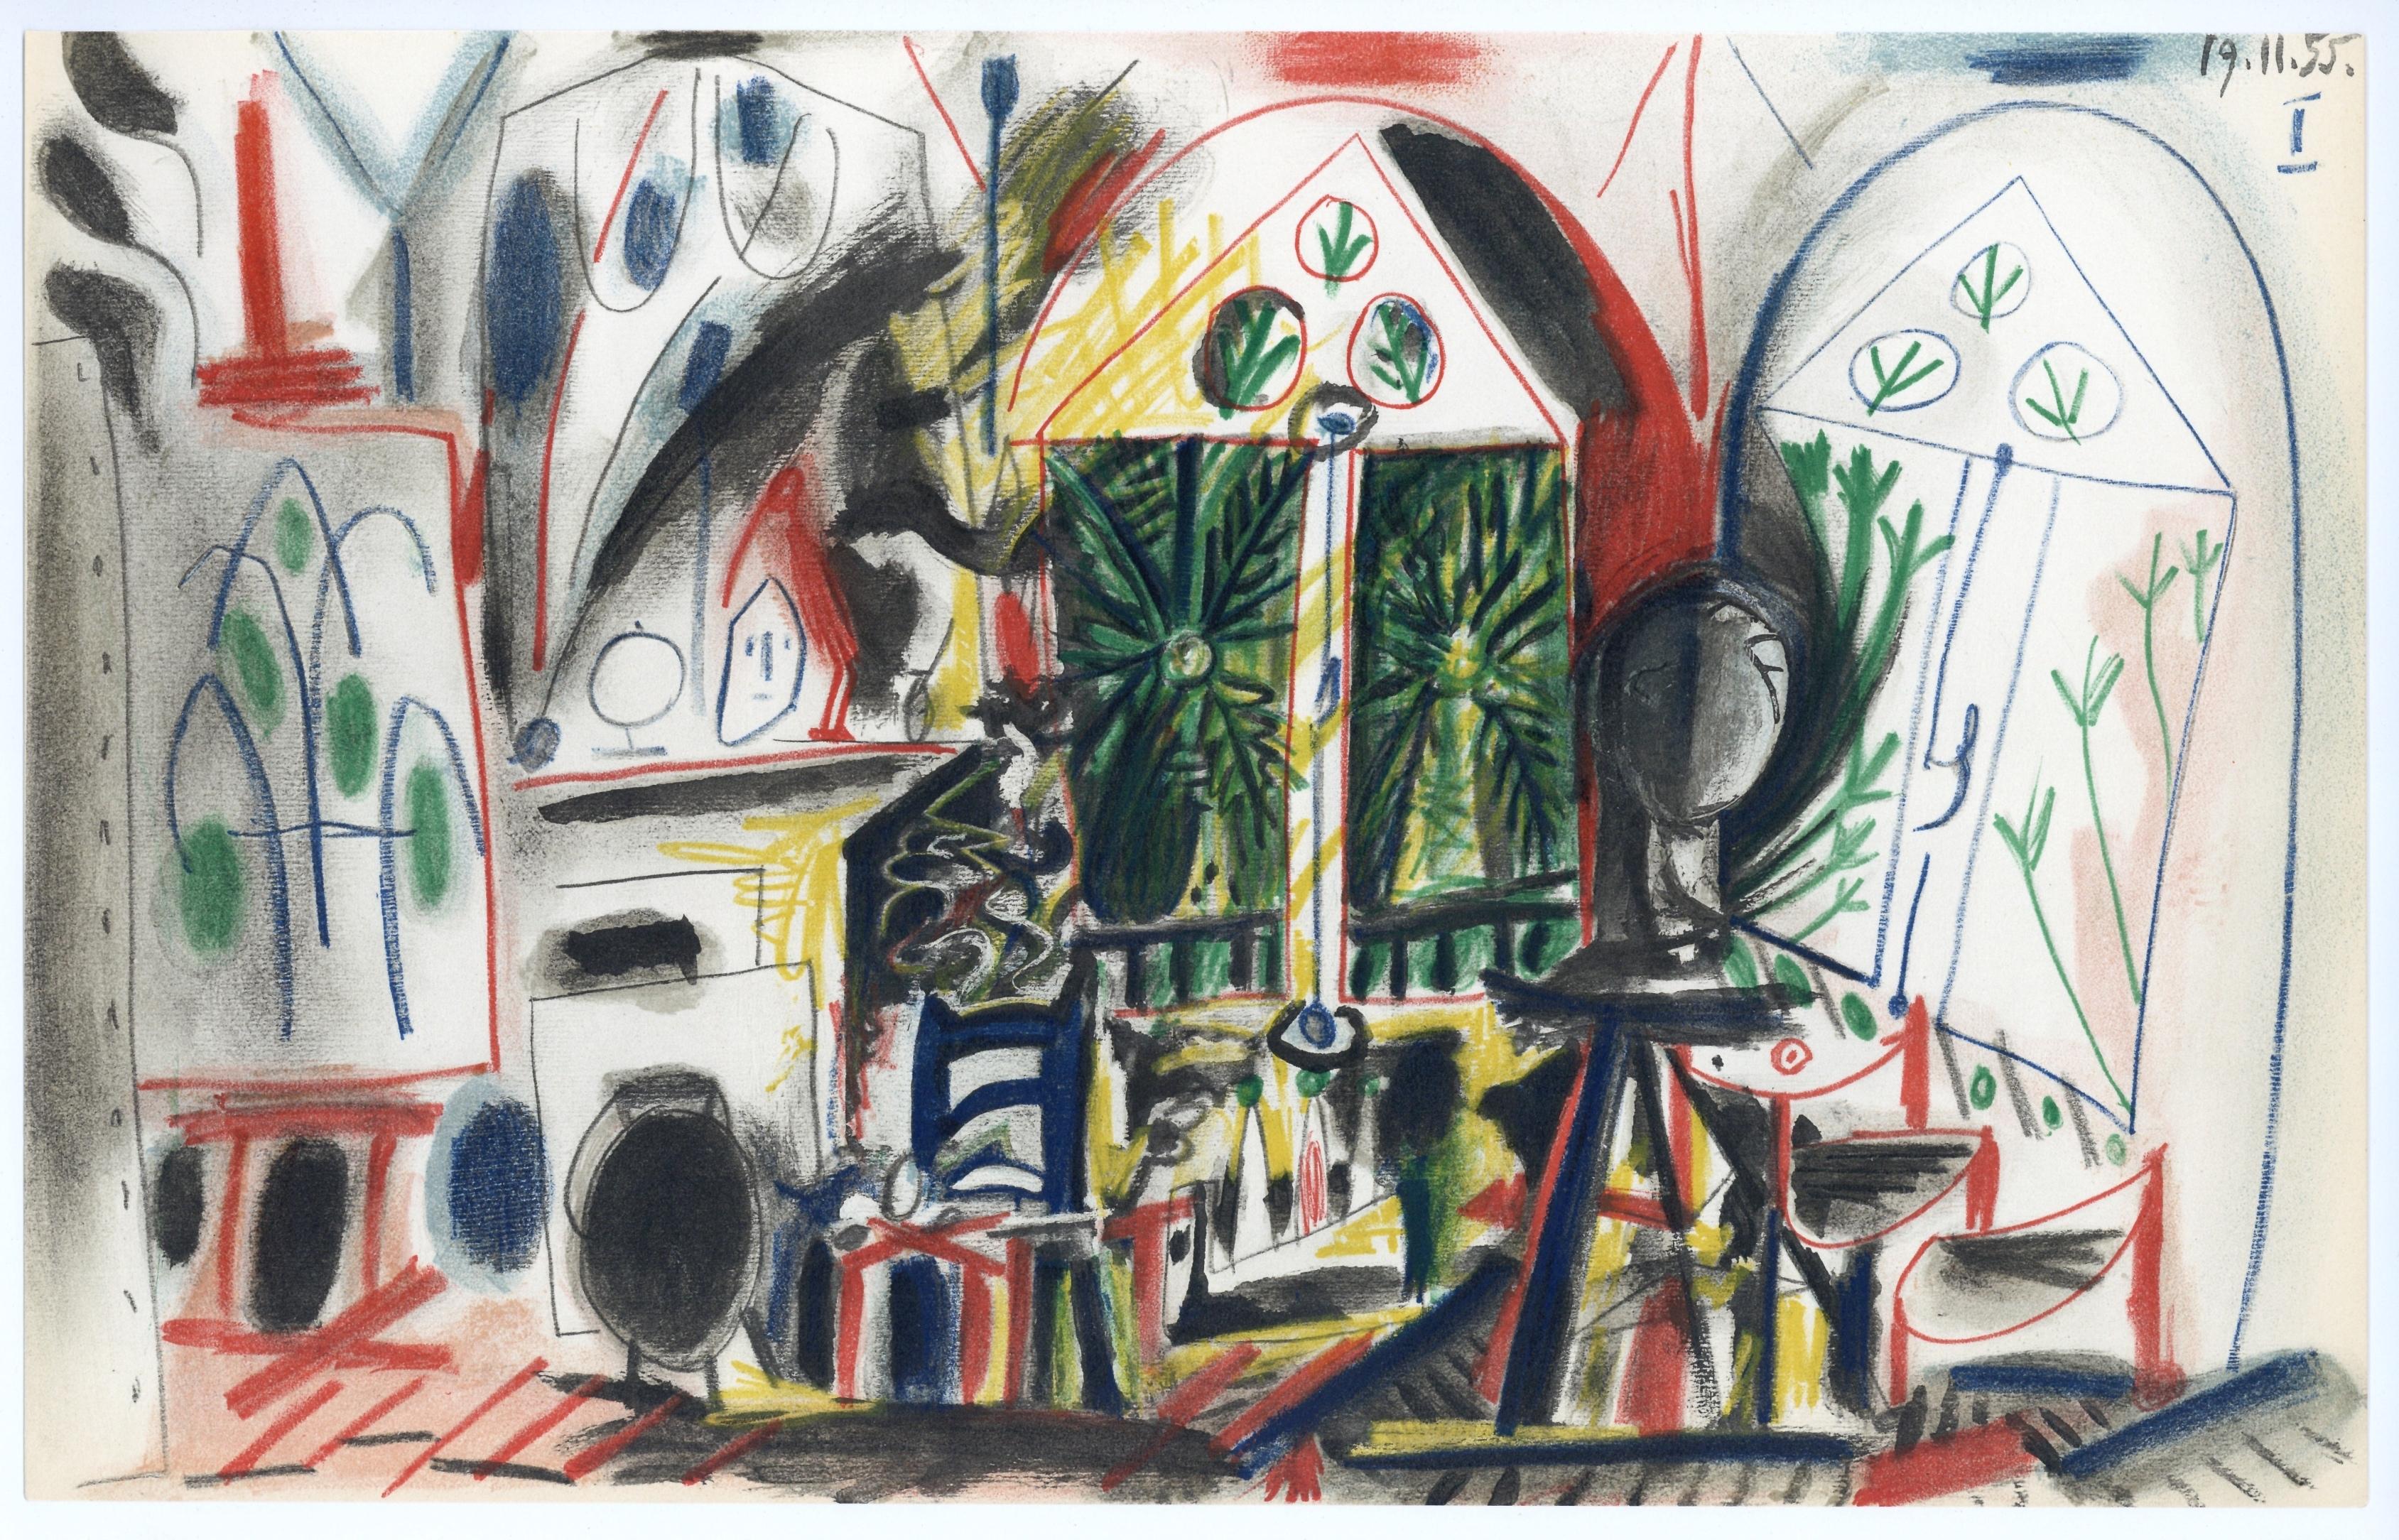 Picasso, 19.11.55, Carnet de la Californie (Cramer 101) (after)